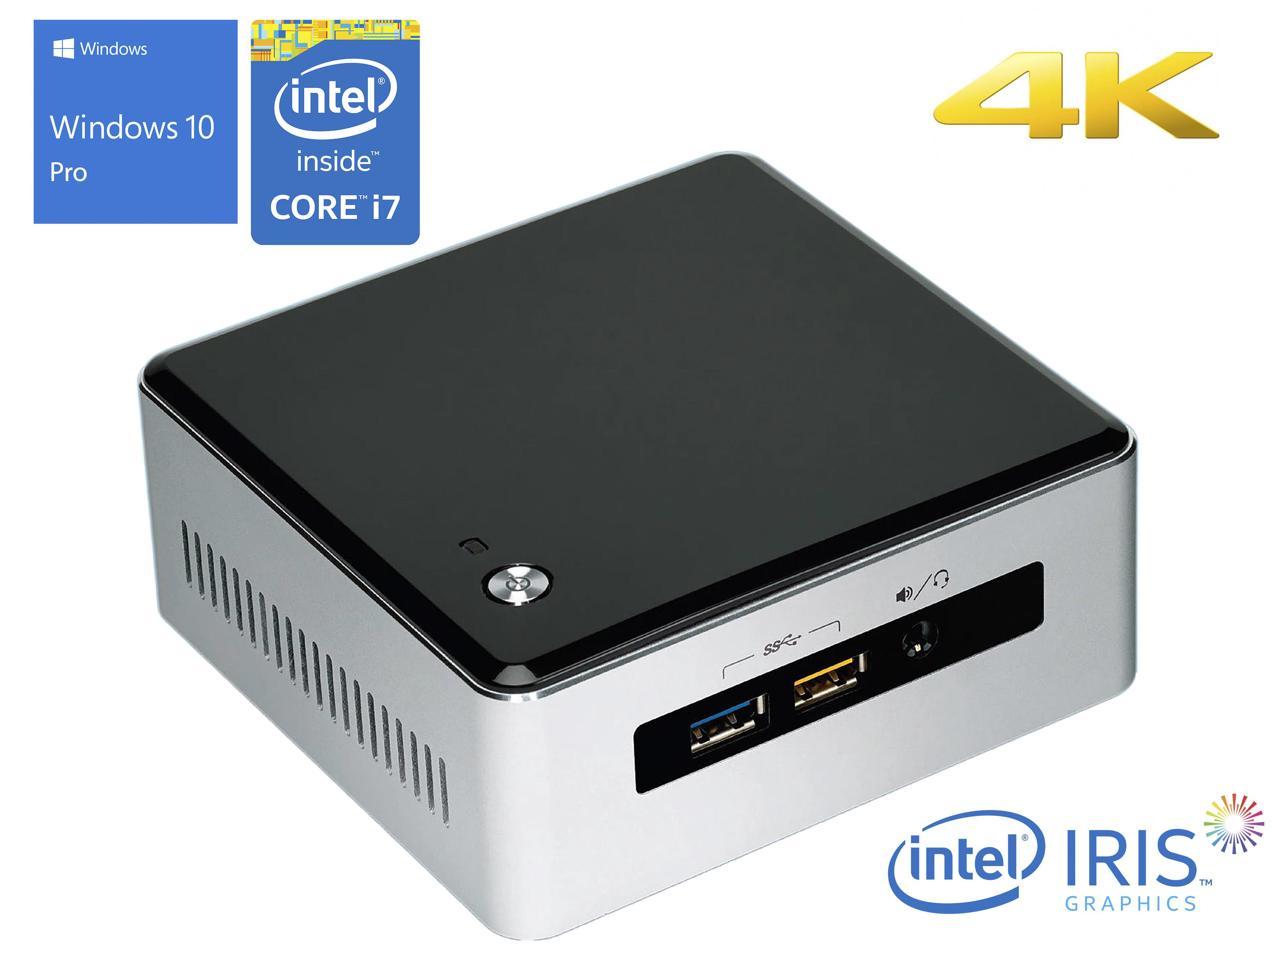 Intel NUC5i7RYH Mini PC, Intel Core i7-5557U Upto 3.40GHz, 16GB RAM, 512GB NVMe SSD + 1TB HDD, Mini HDMI, Mini DisplayPort, Wi-Fi, Bluetooth, Windows 10 Pro